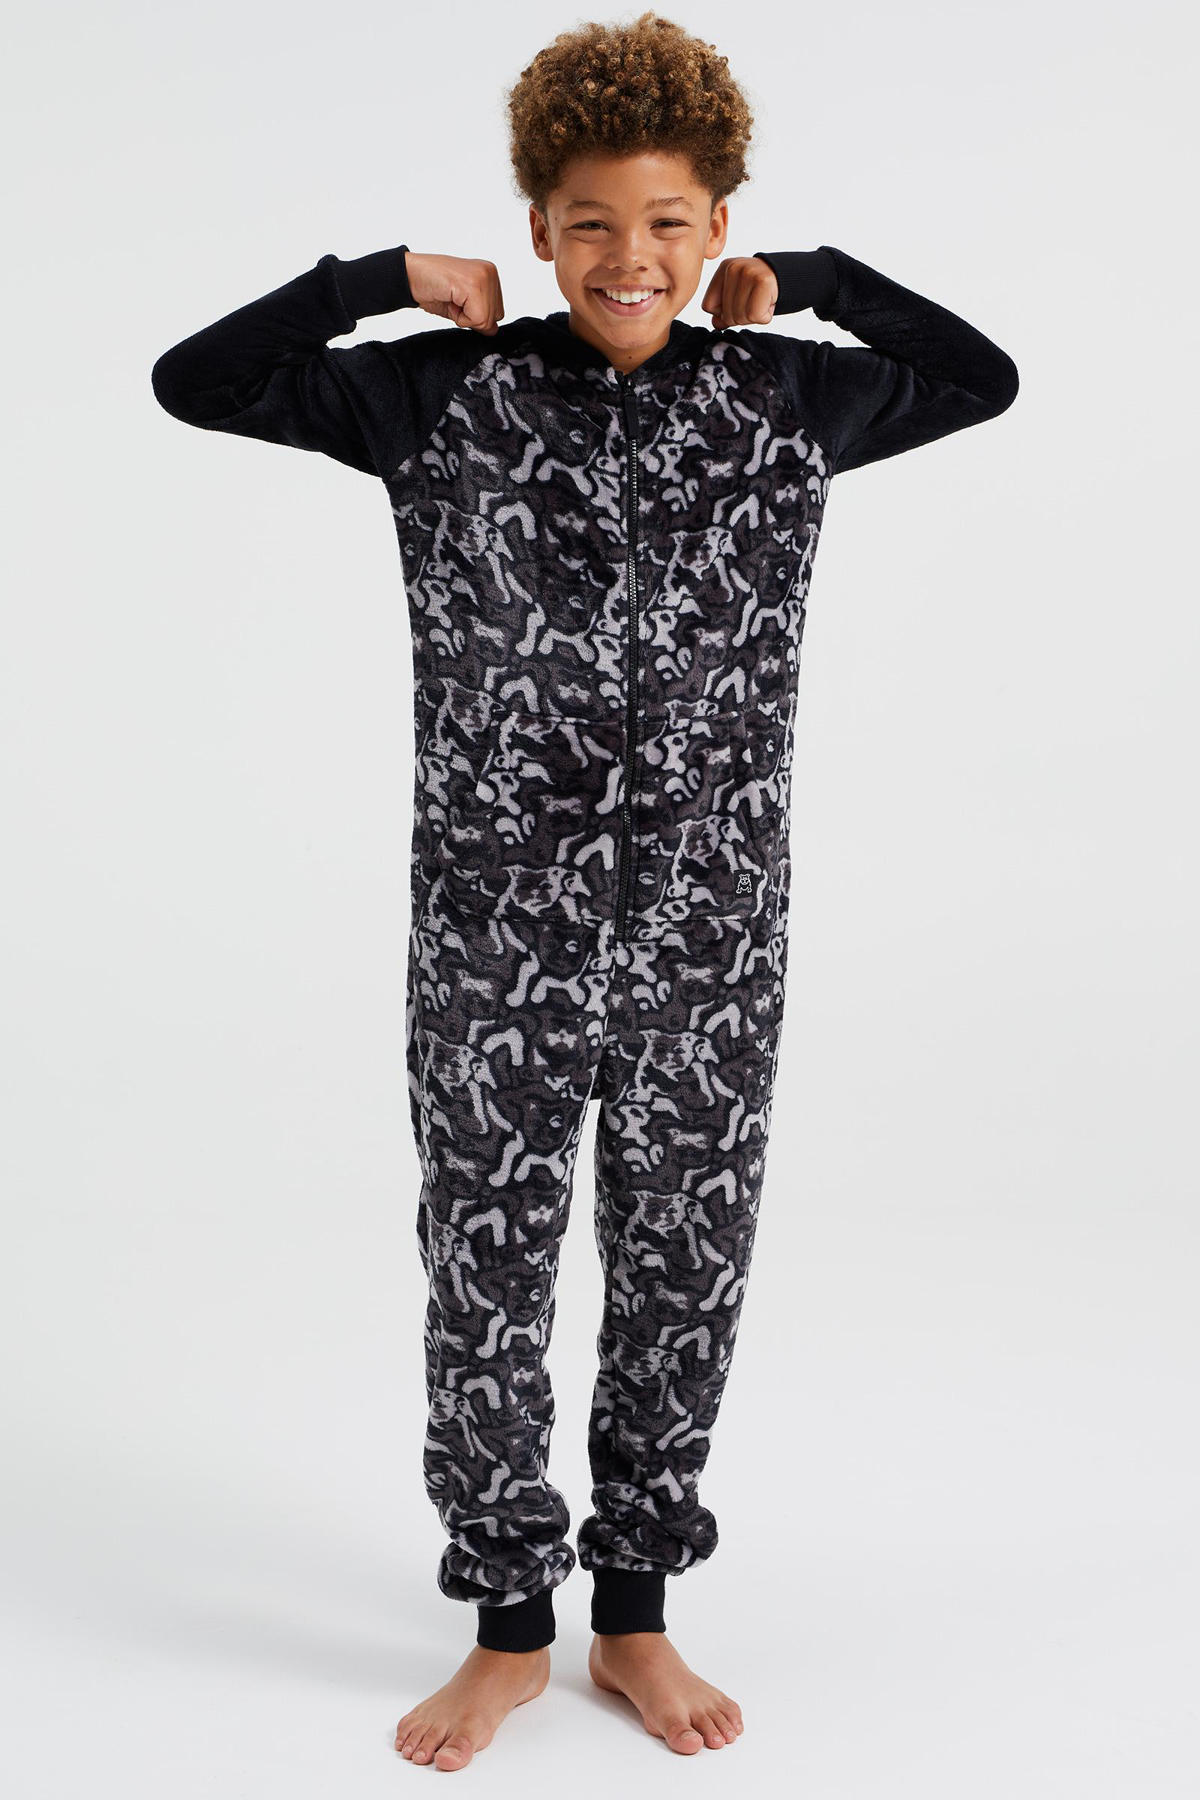 Vertrek naar Componist Kinderrijmpjes WE Fashion Salty Dog onesie met allover print zwart/grijs | wehkamp